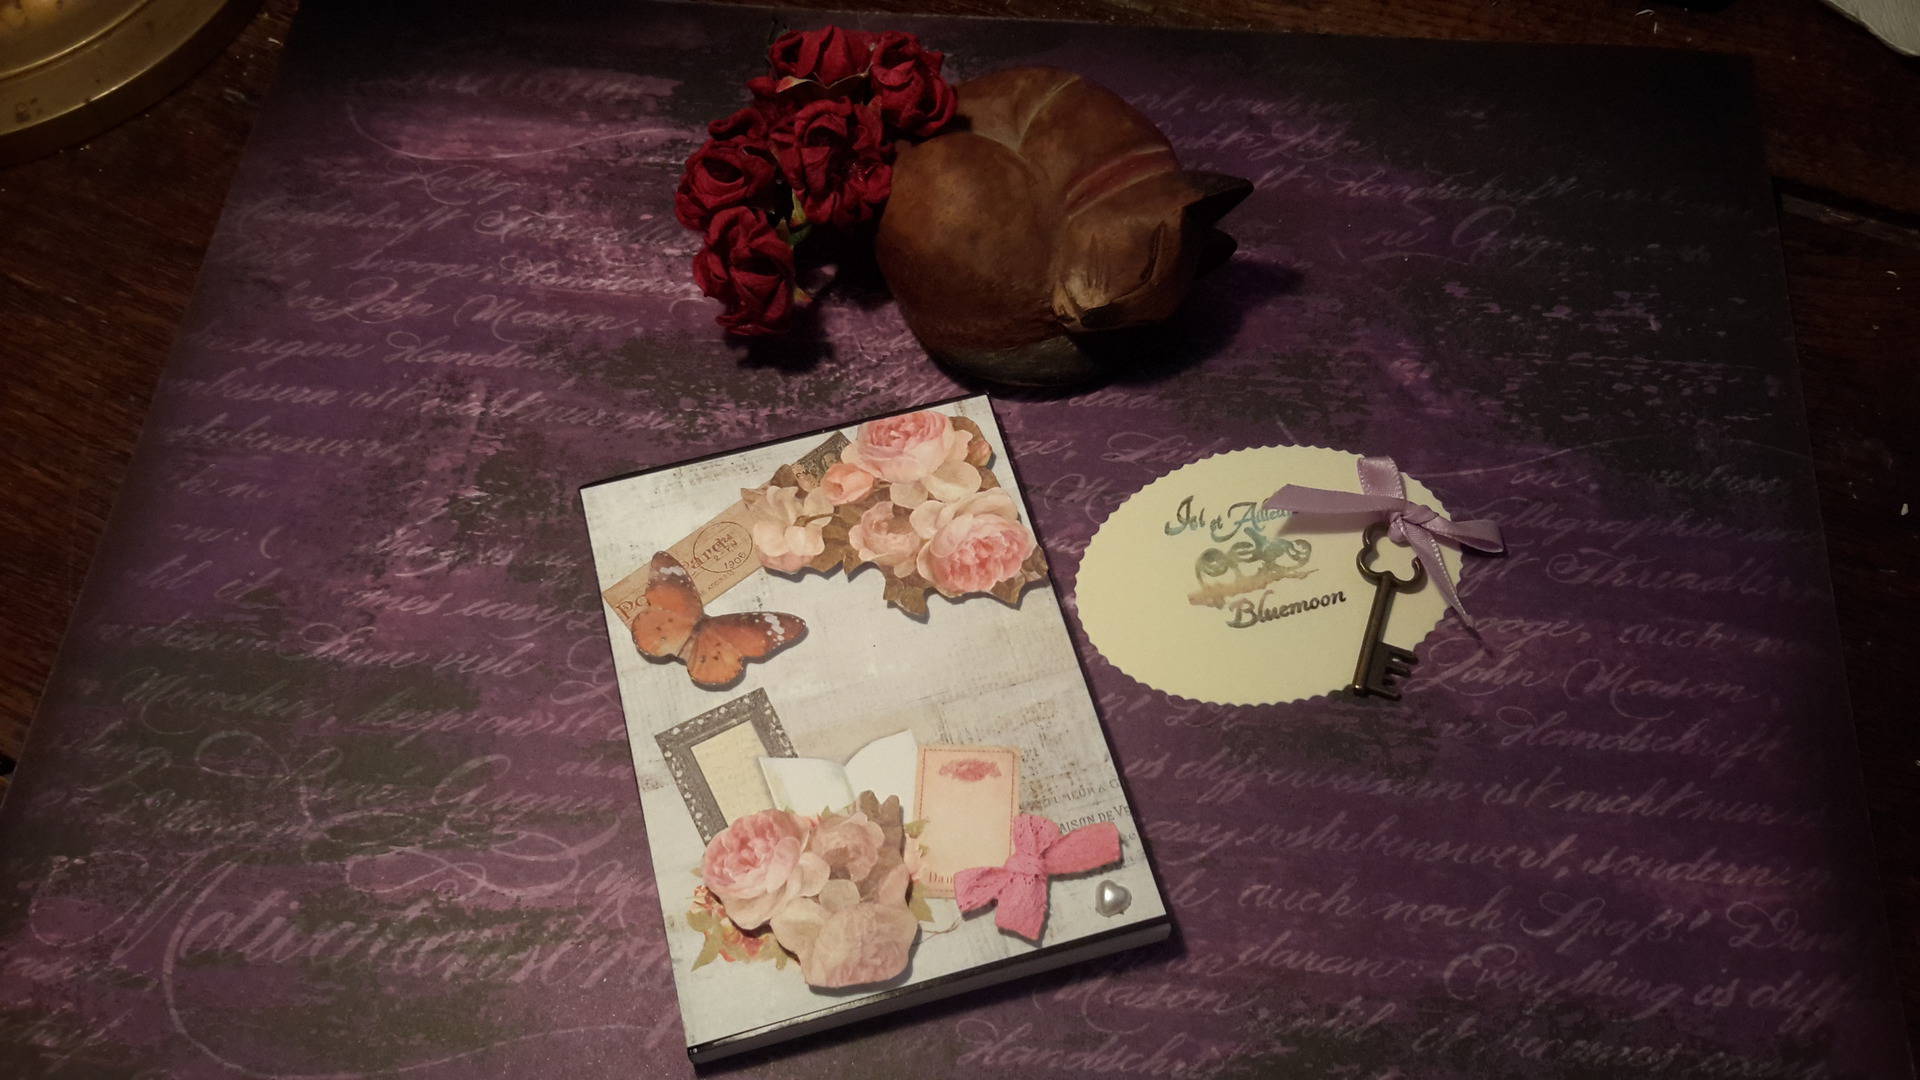 Carnet de notes original femme, roses et papillon, déco vintage